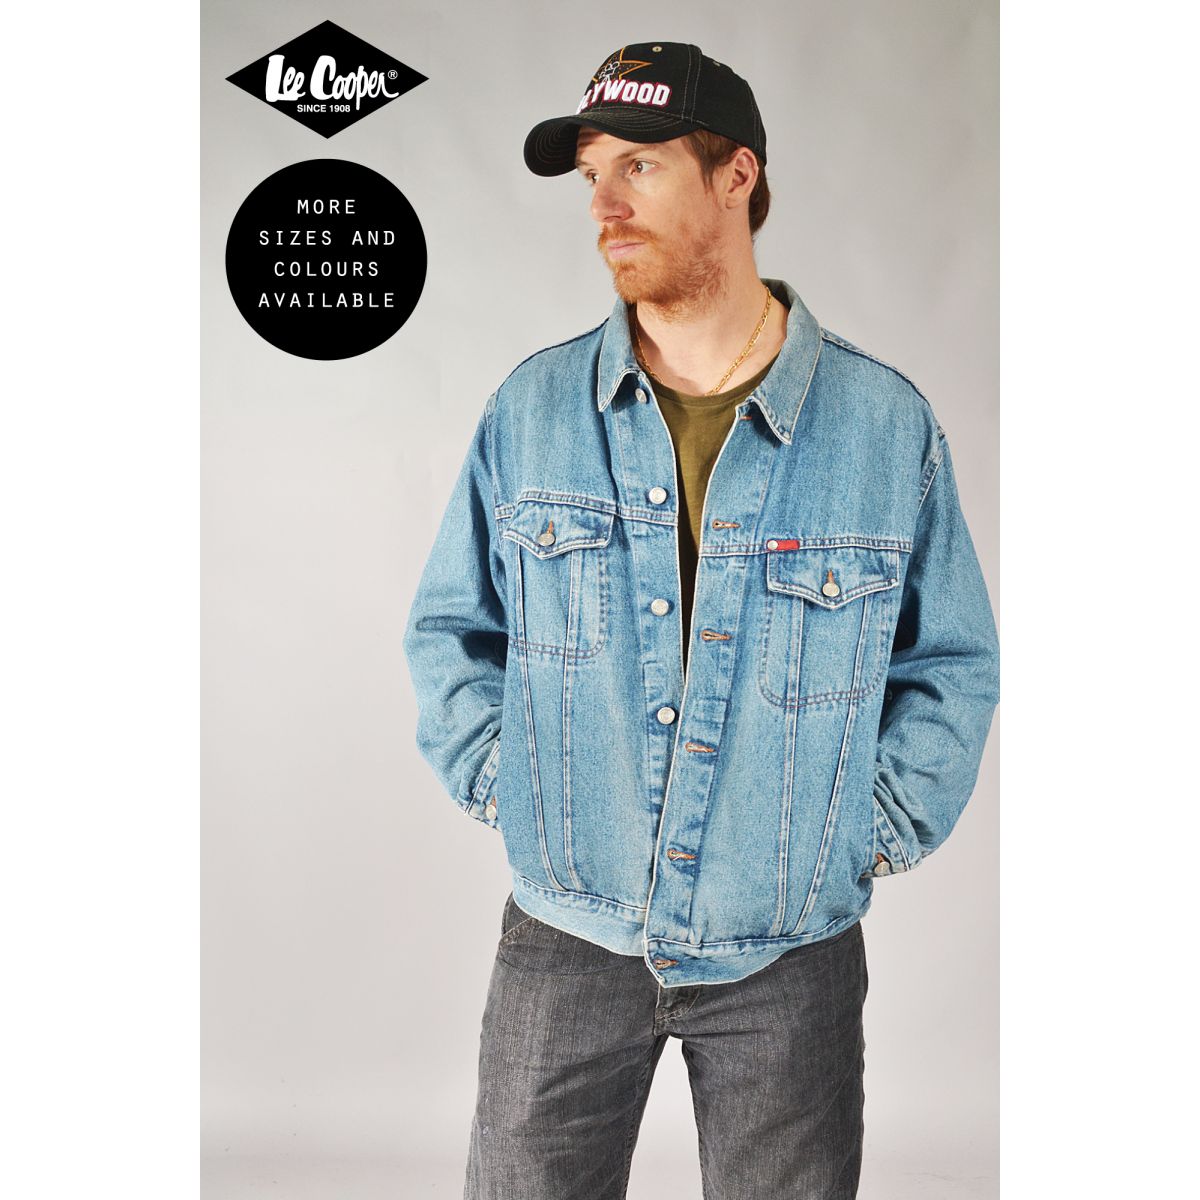 Lee Cooper Vintage Denim Jackets | Vintage Online 